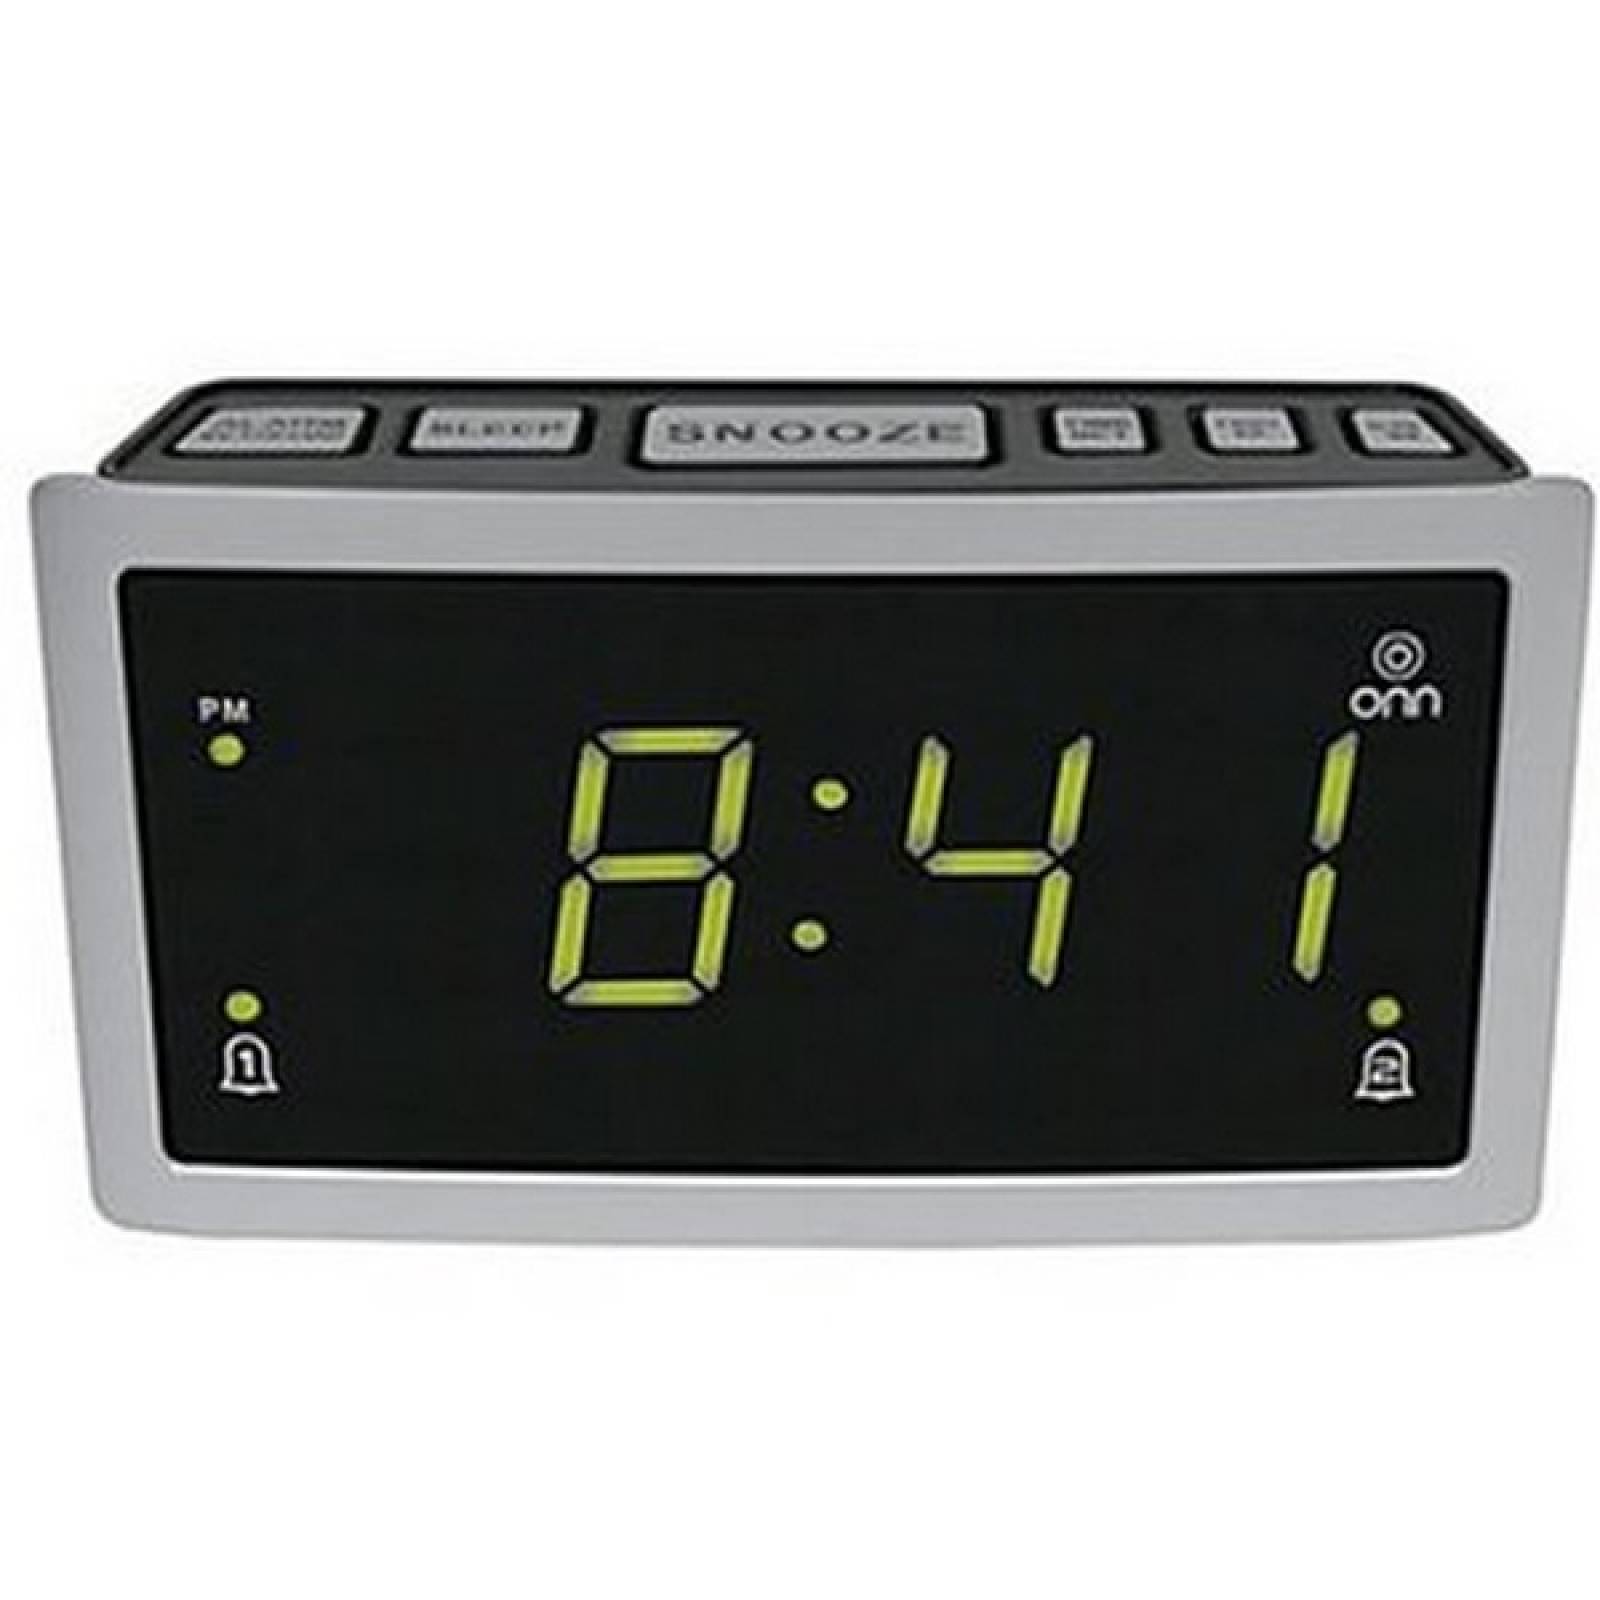 Radio Reloj Digital Despertador alarma Onn AM/FM ONA12AV028